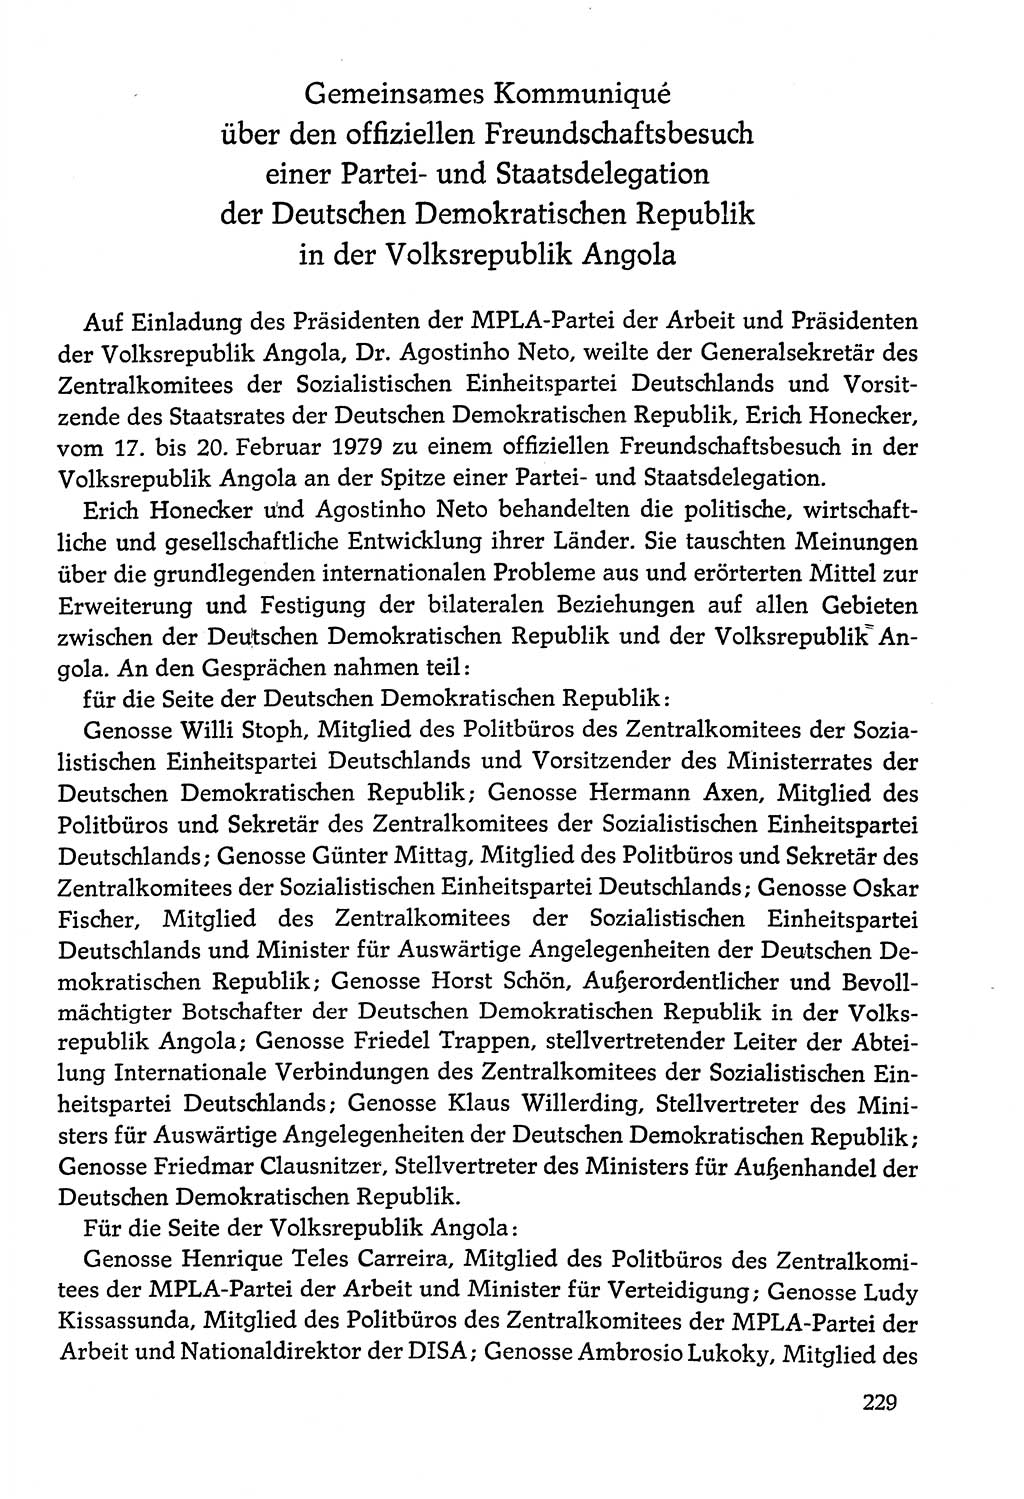 Dokumente der Sozialistischen Einheitspartei Deutschlands (SED) [Deutsche Demokratische Republik (DDR)] 1978-1979, Seite 229 (Dok. SED DDR 1978-1979, S. 229)